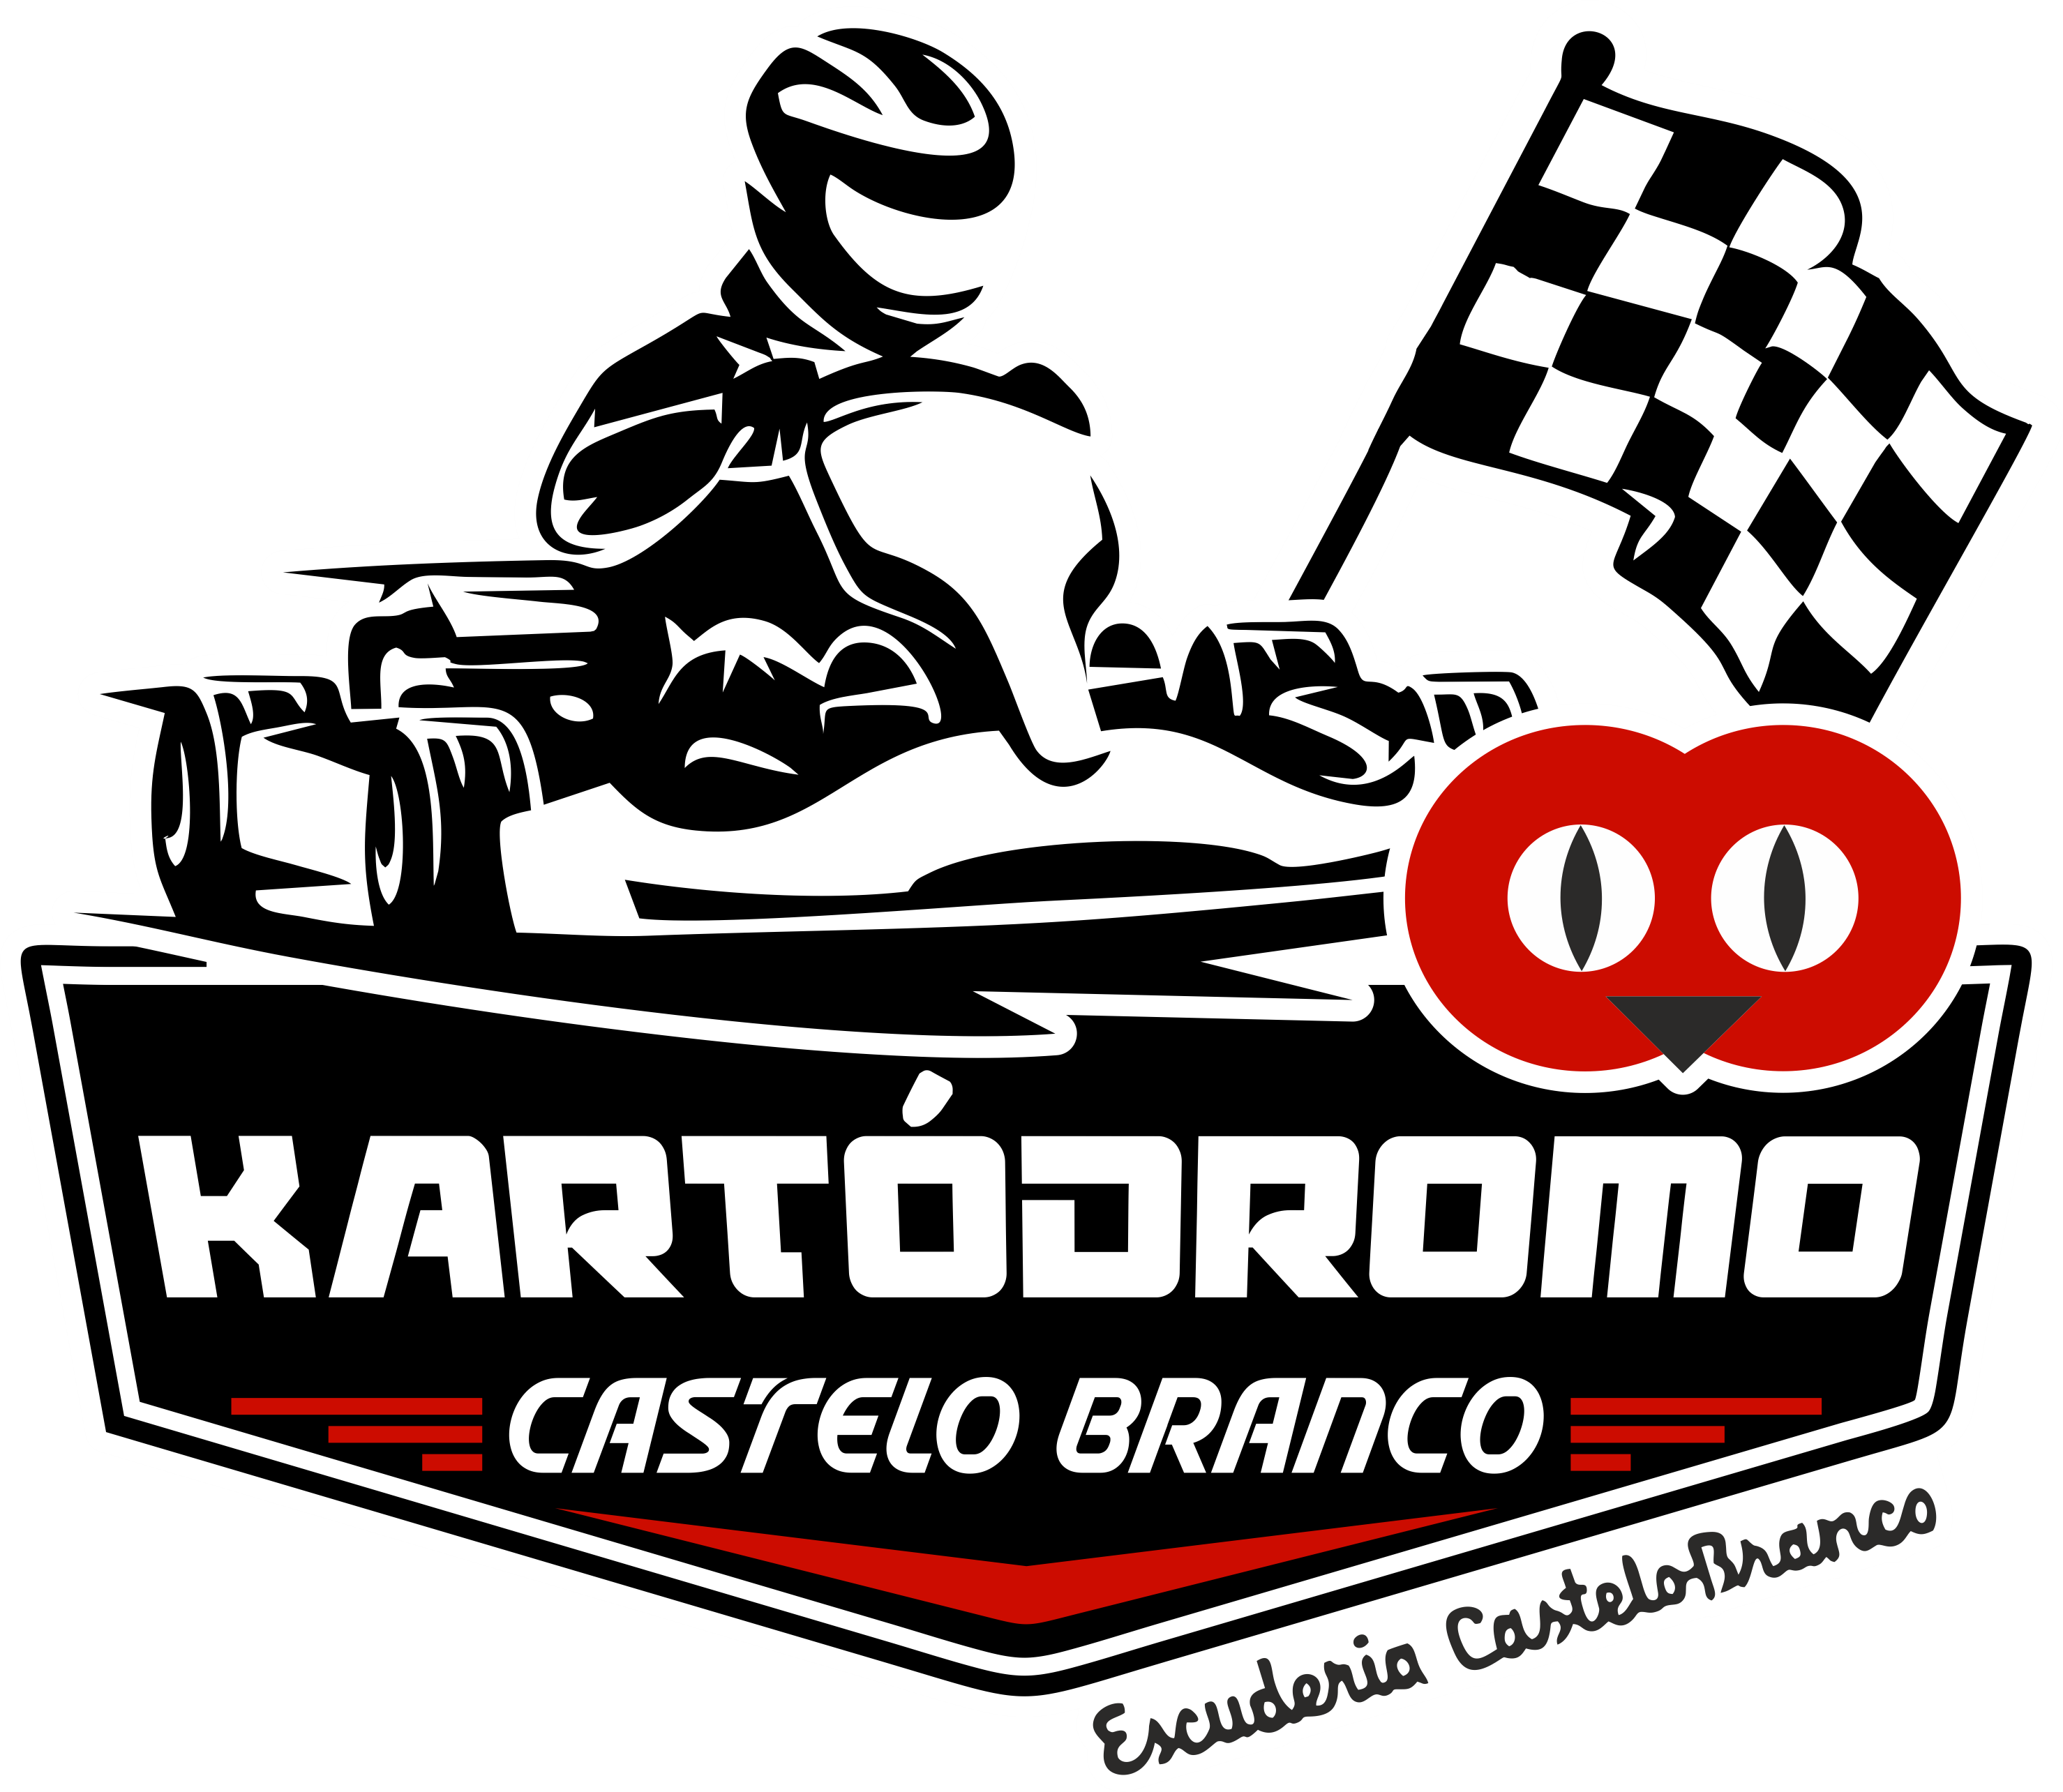 Kartódromo de Castelo Branco